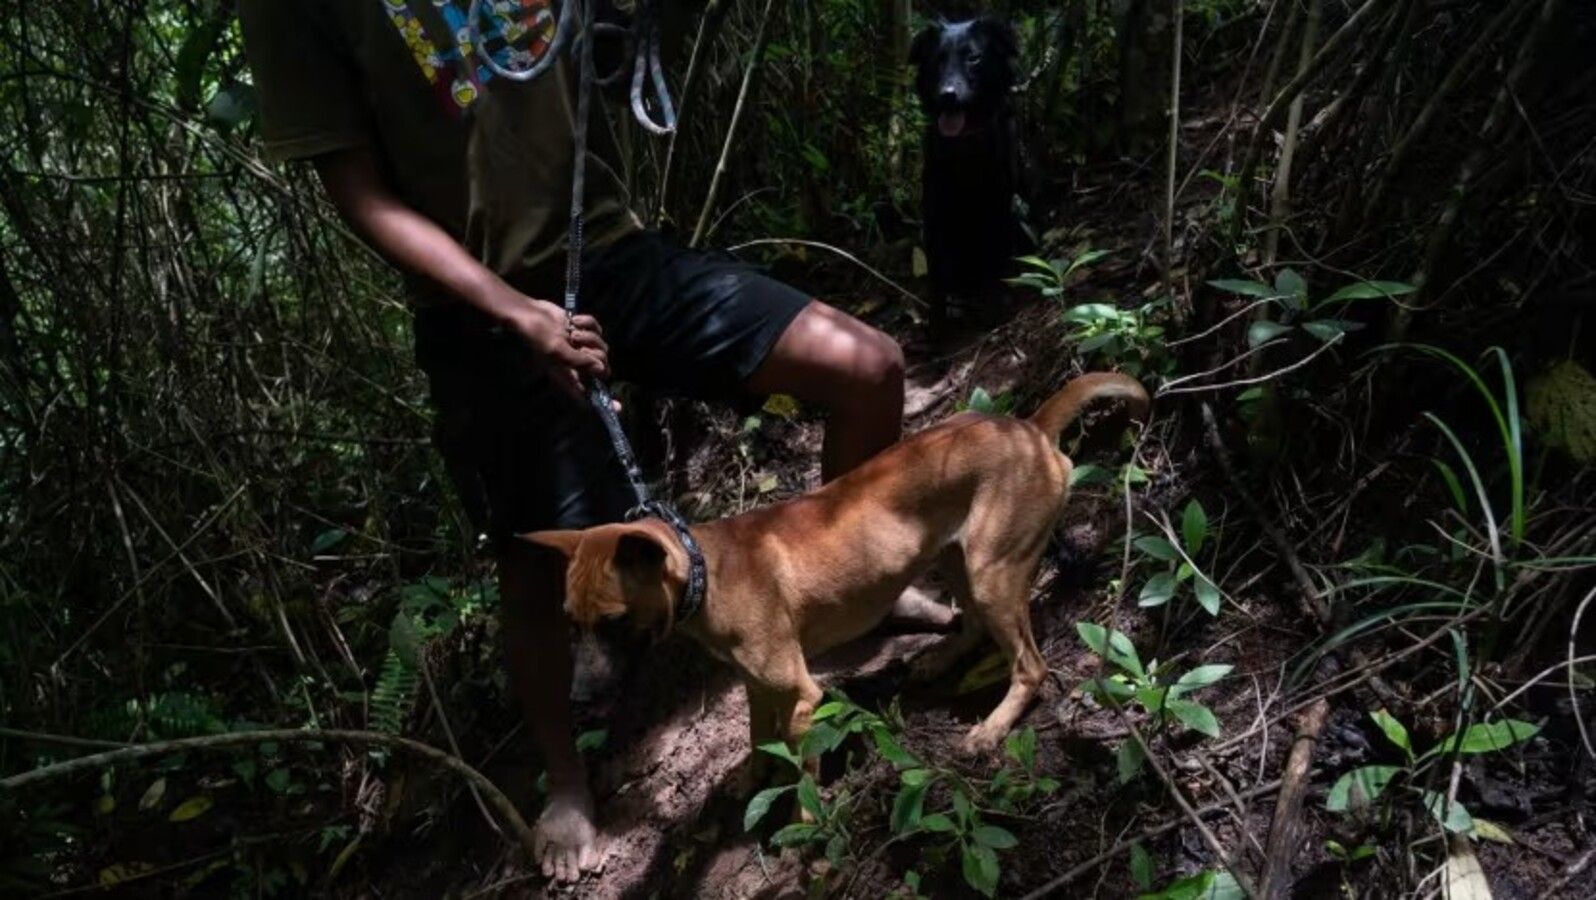 Seekor anjing mencium aroma babi hutan saat berburu di perbukitan yang rimbun di Sikaladi, Sumatra Barat, Indonesia. (Foto: CNA/Wisnu Agung Prasetyo)